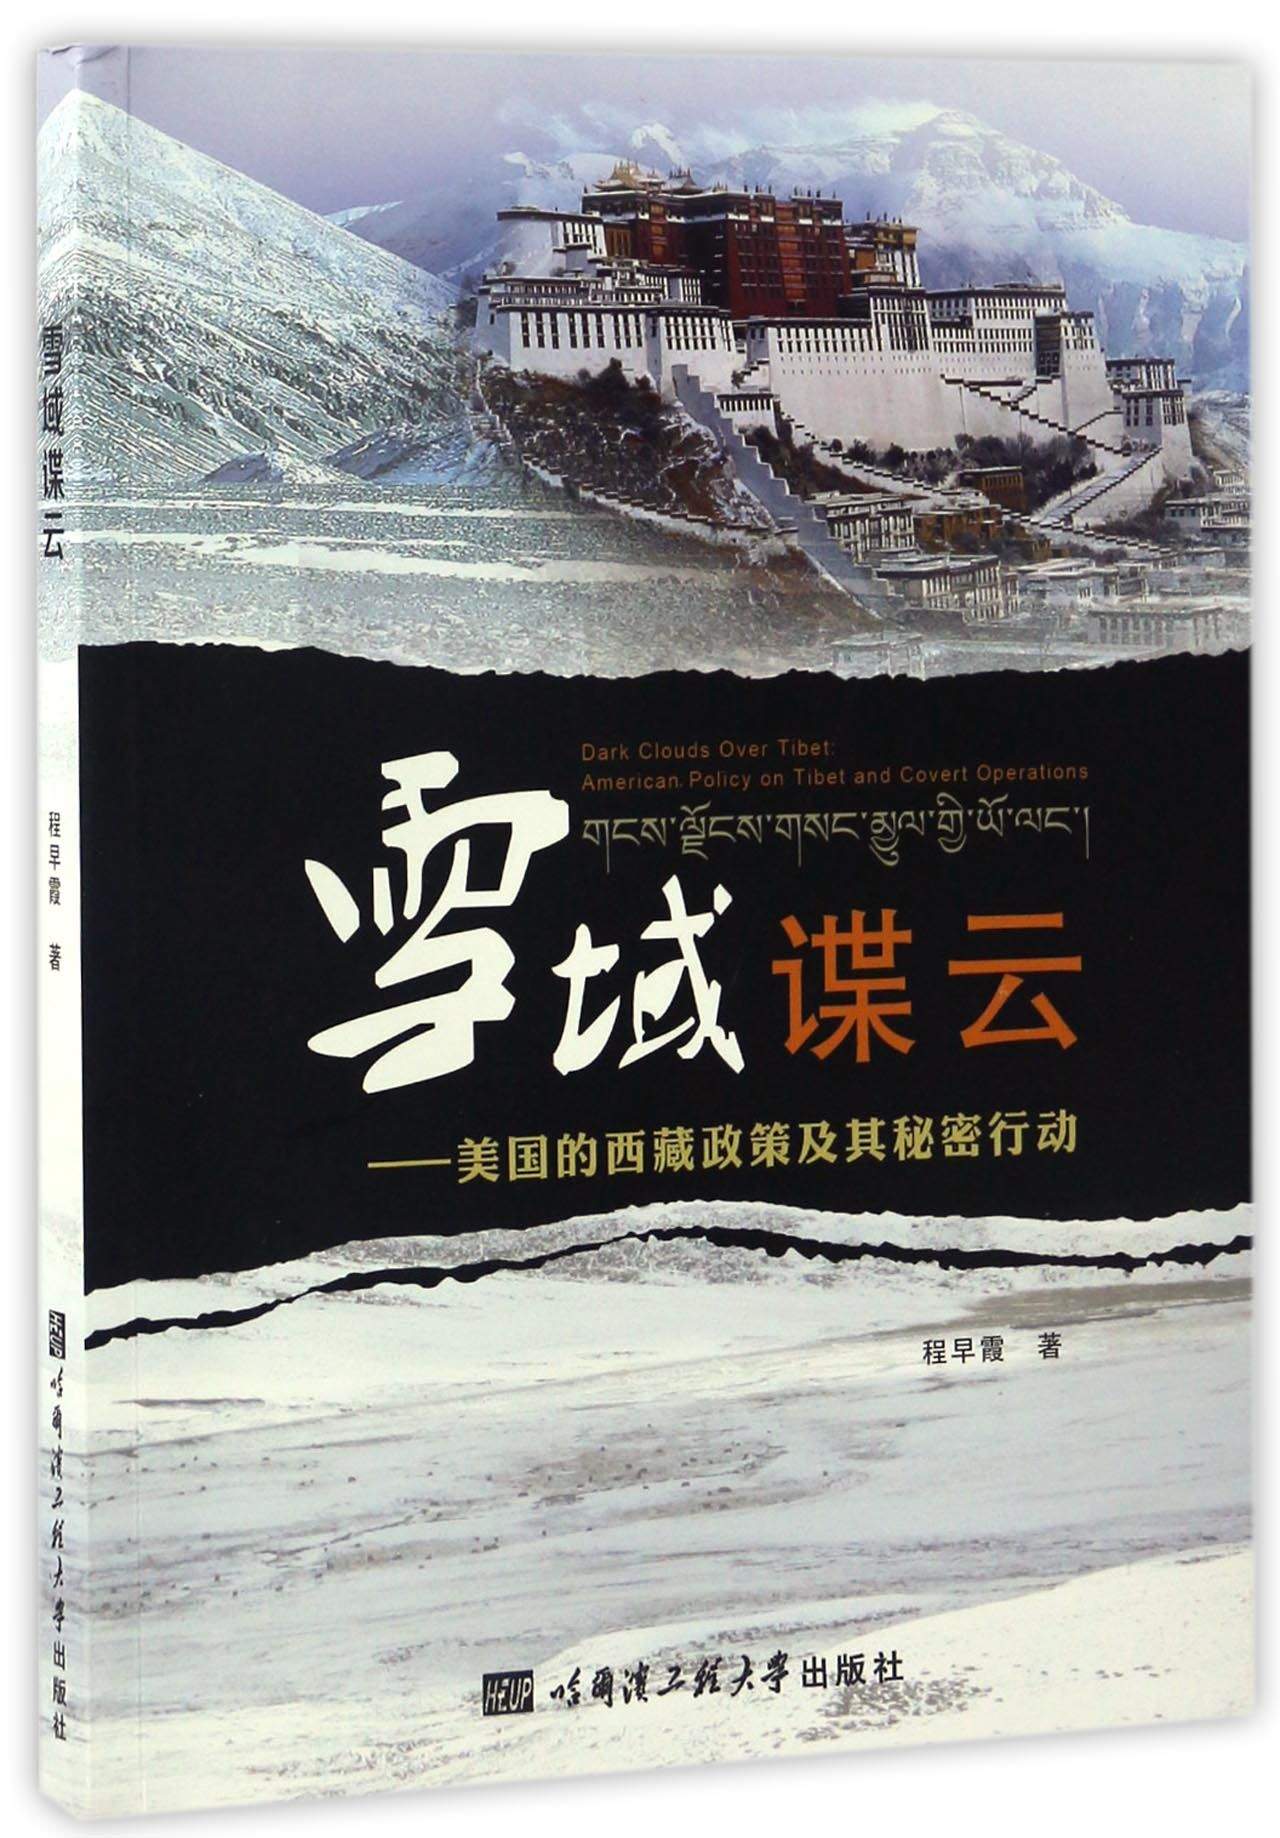 雪域谍云 美国的西藏政策及其秘密行动 azw3格式下载